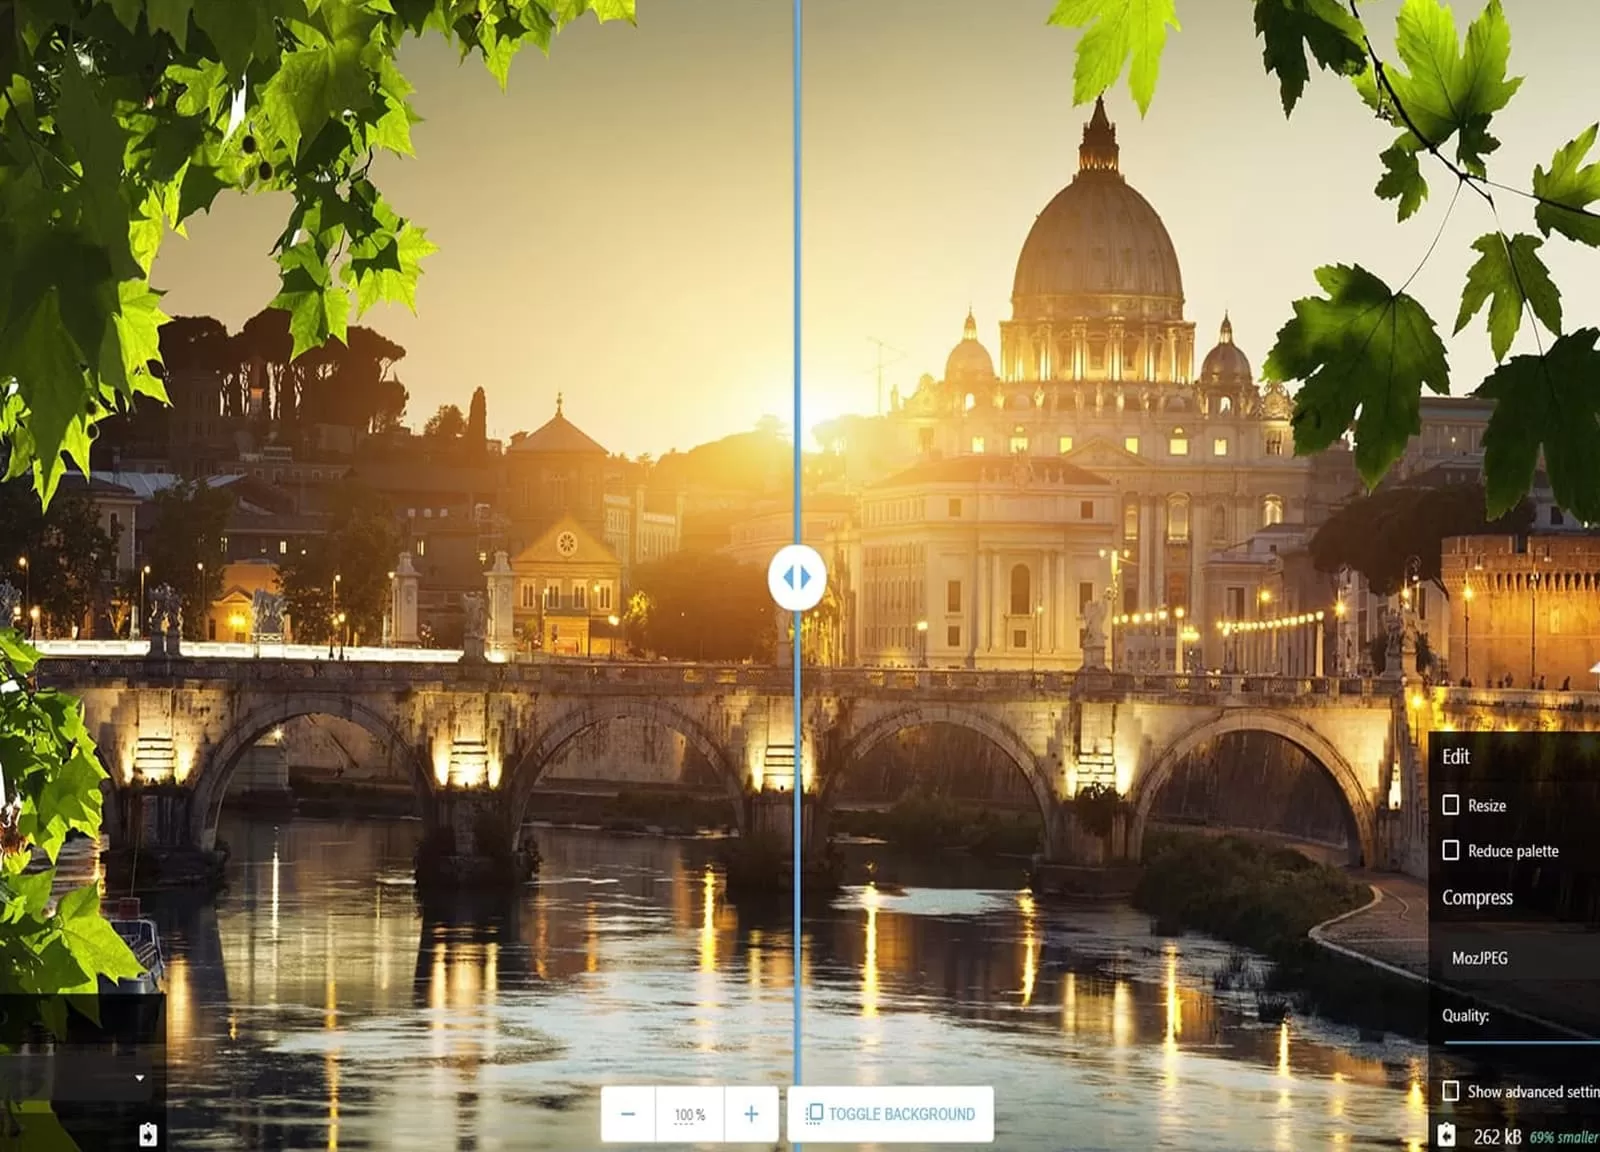 Testamos Squoosh: novo app de otimização de imagens na WEB